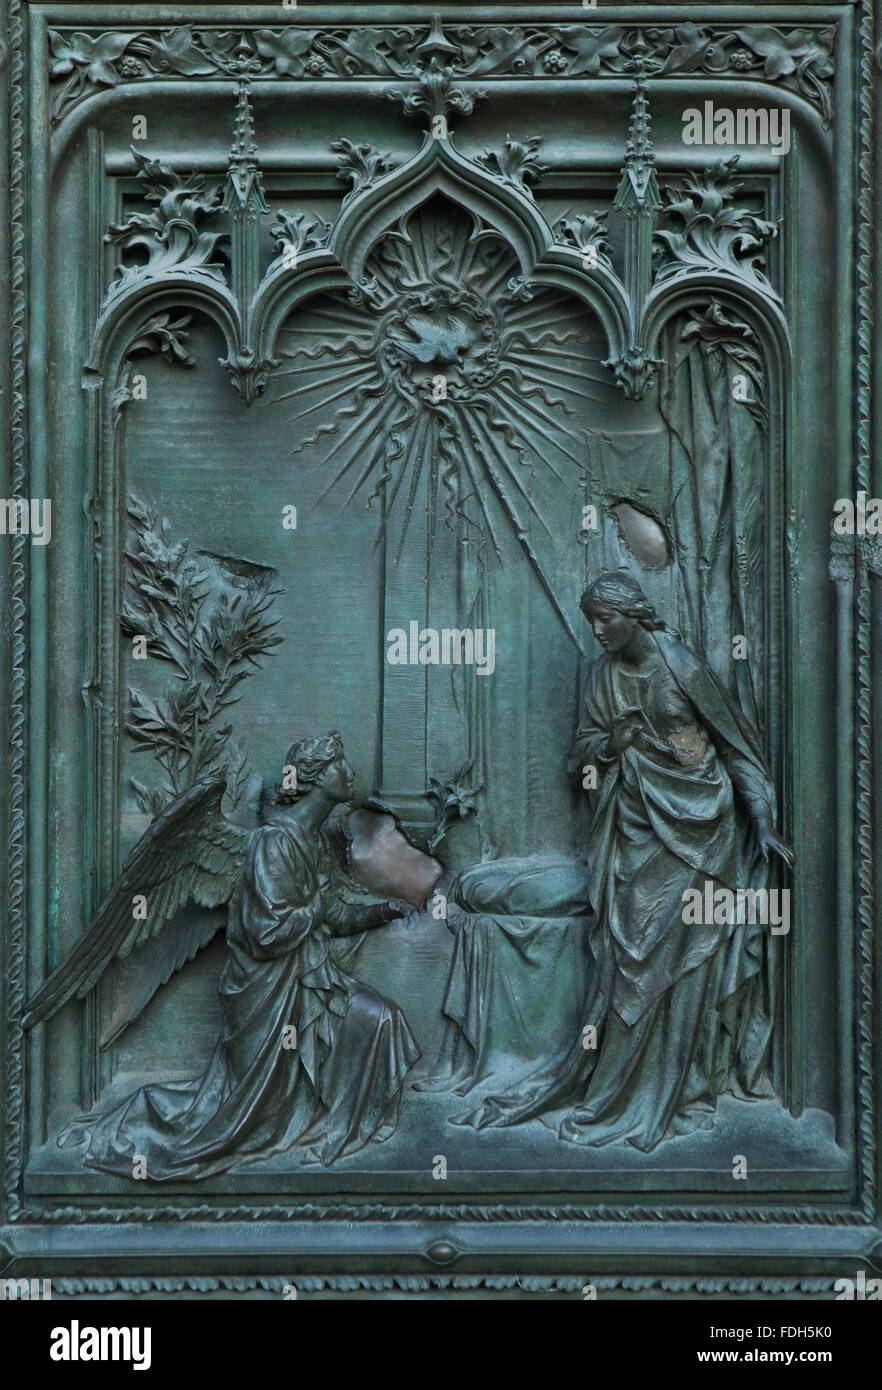 De l'Annonciation. Détail de la porte de bronze de la principale cathédrale de Milan (Duomo di Milano) à Milan, Italie. La porte de bronze a été desig Banque D'Images